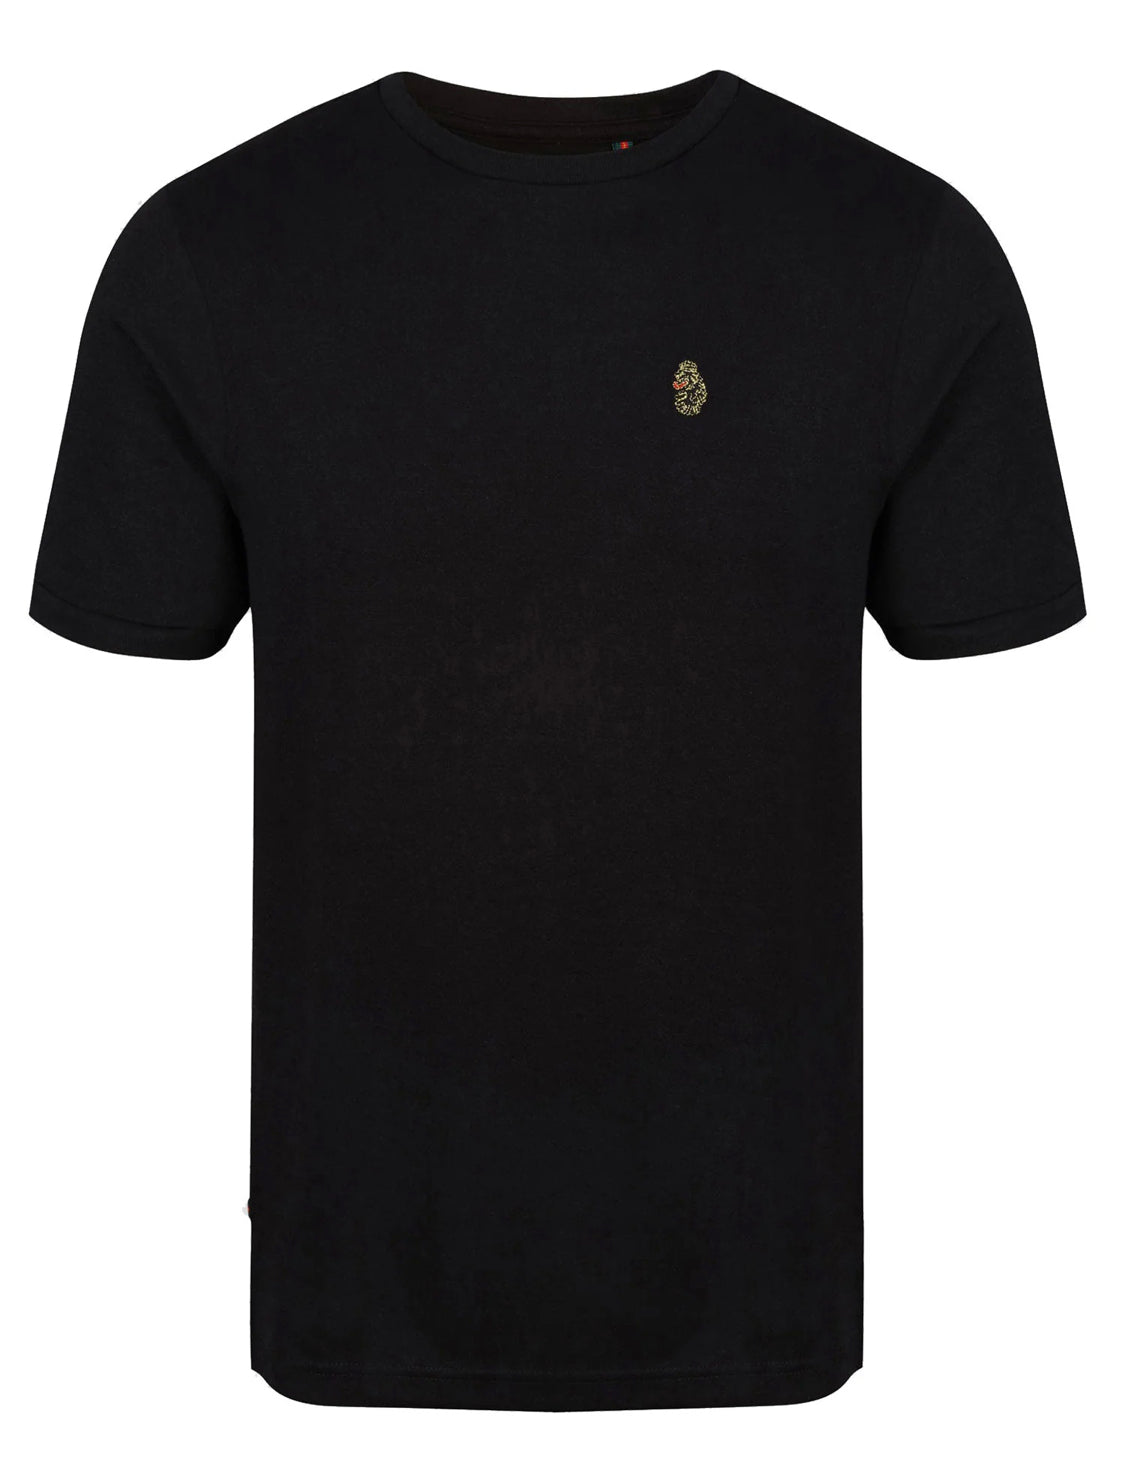 Luke Trafftastic T-Shirt Black